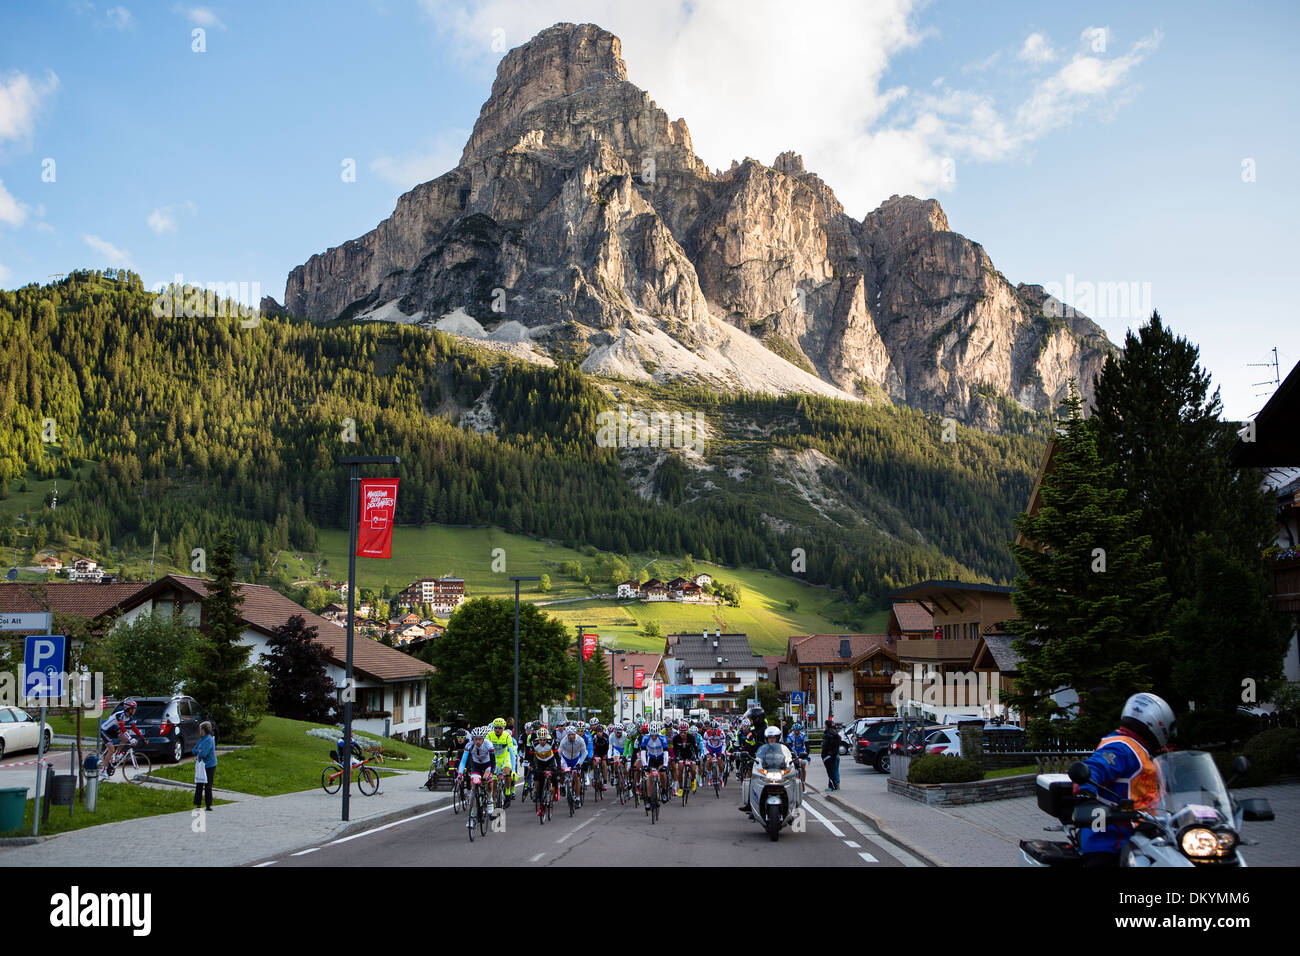 Pack de cyclistes roulent par une montagne au cours de la-Maratona dles Dolomites course en Italie, 2013 Banque D'Images